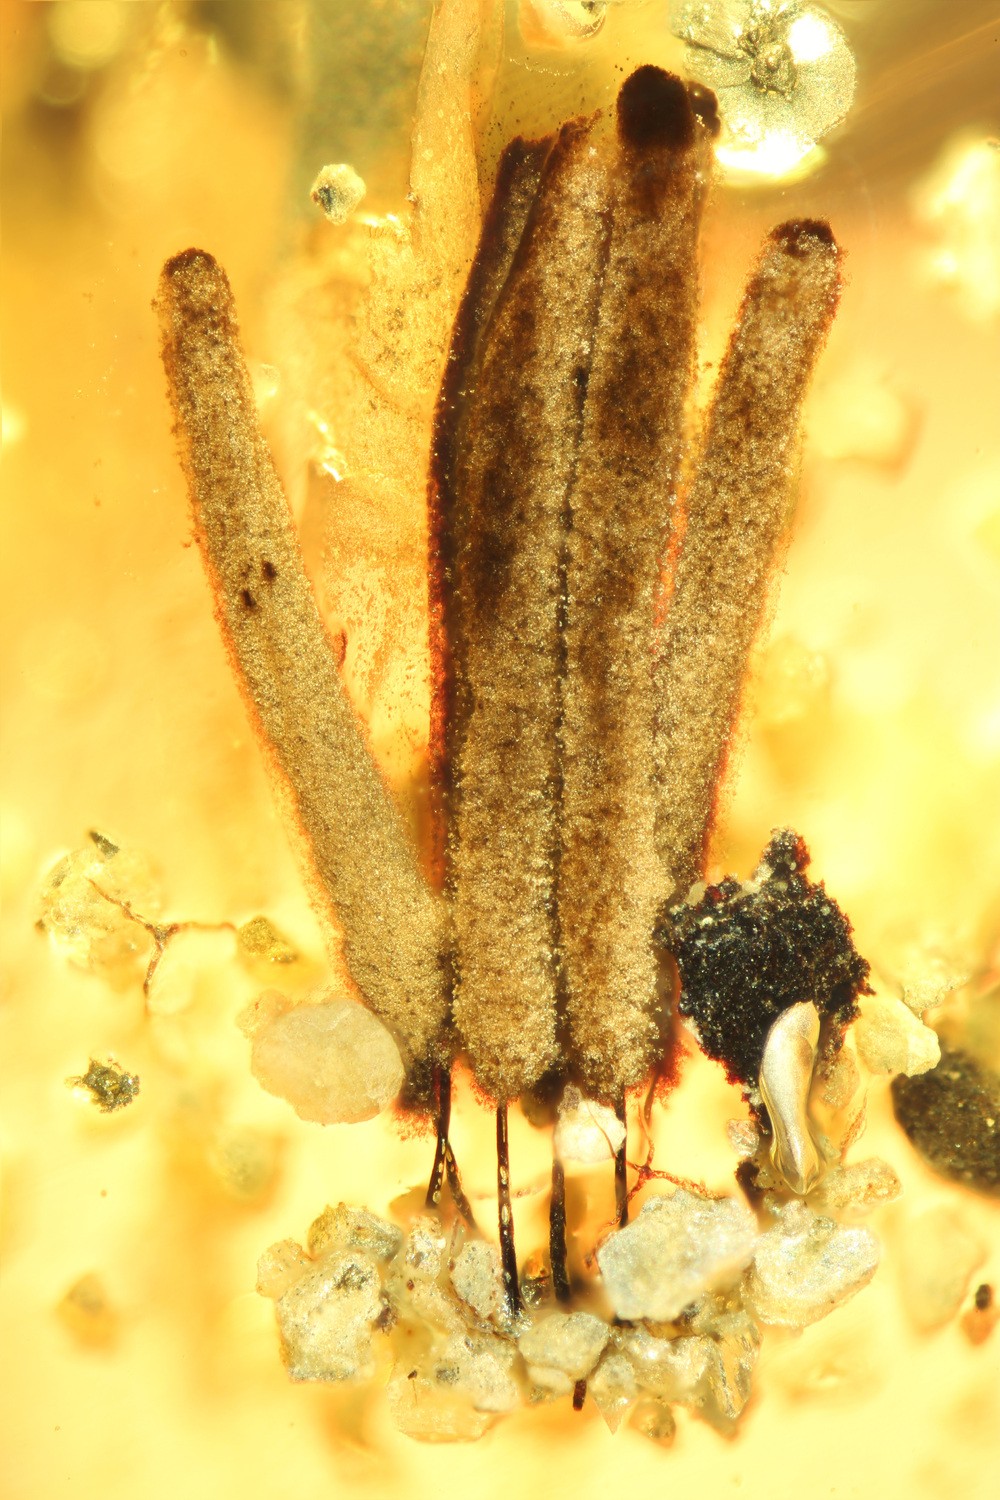 Ser vivo é um protozoário ameboide que pertence ao intrafilo Mycetozoa — sua aparência é similar a do musgo, por exemplo (Foto: Scientific Reports)